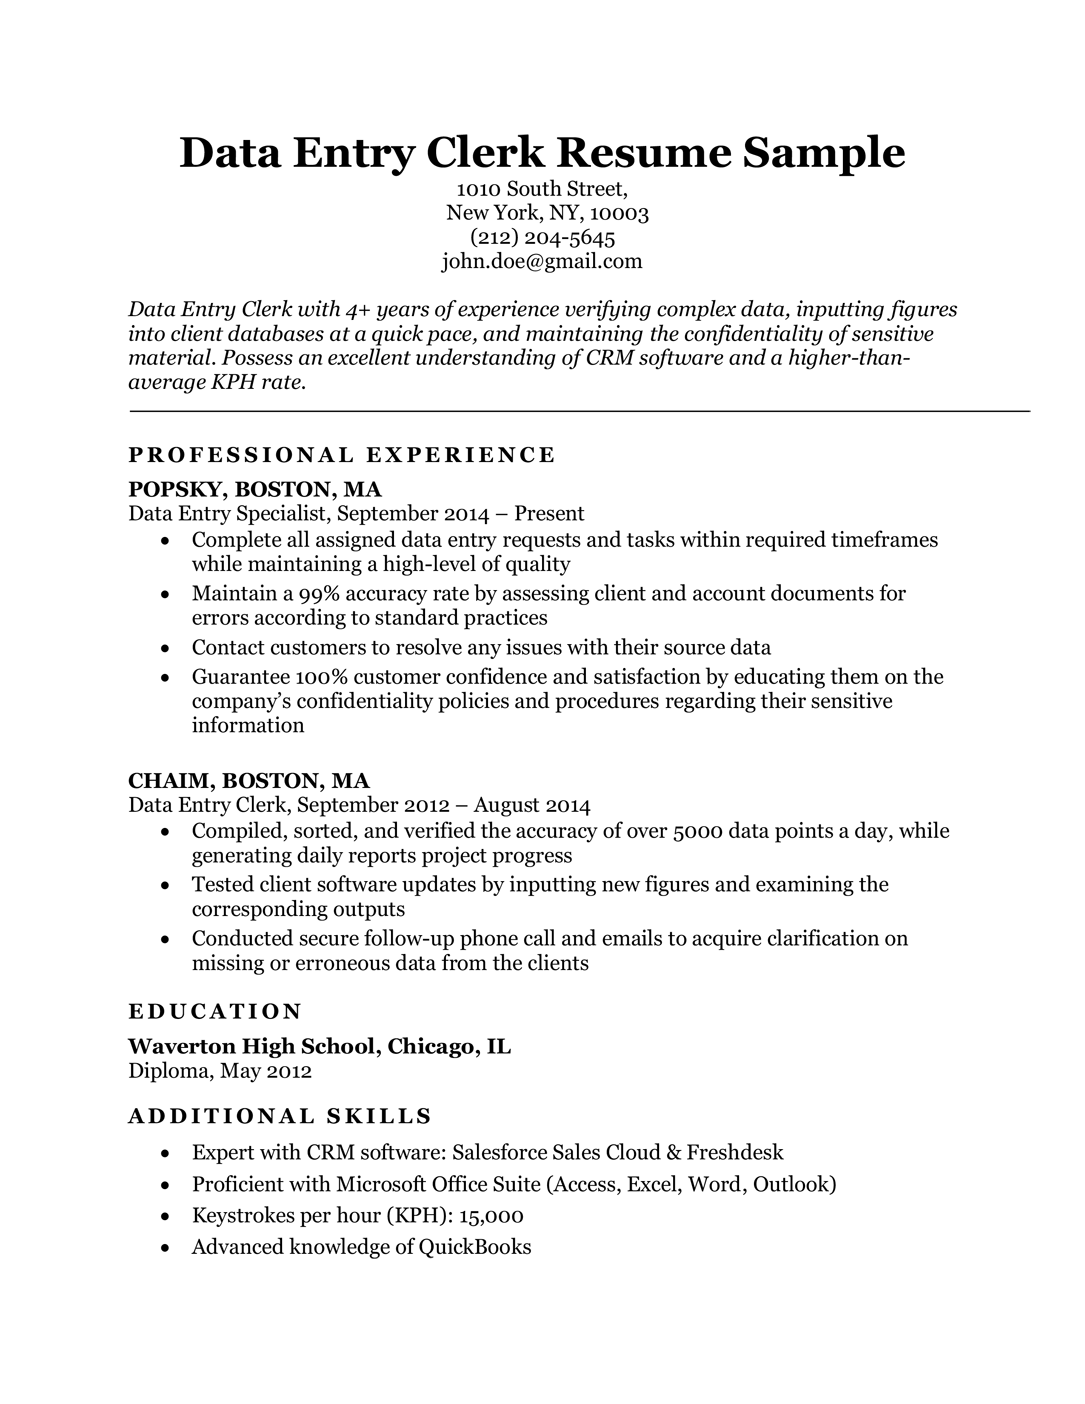 Data entry clerk resume sample